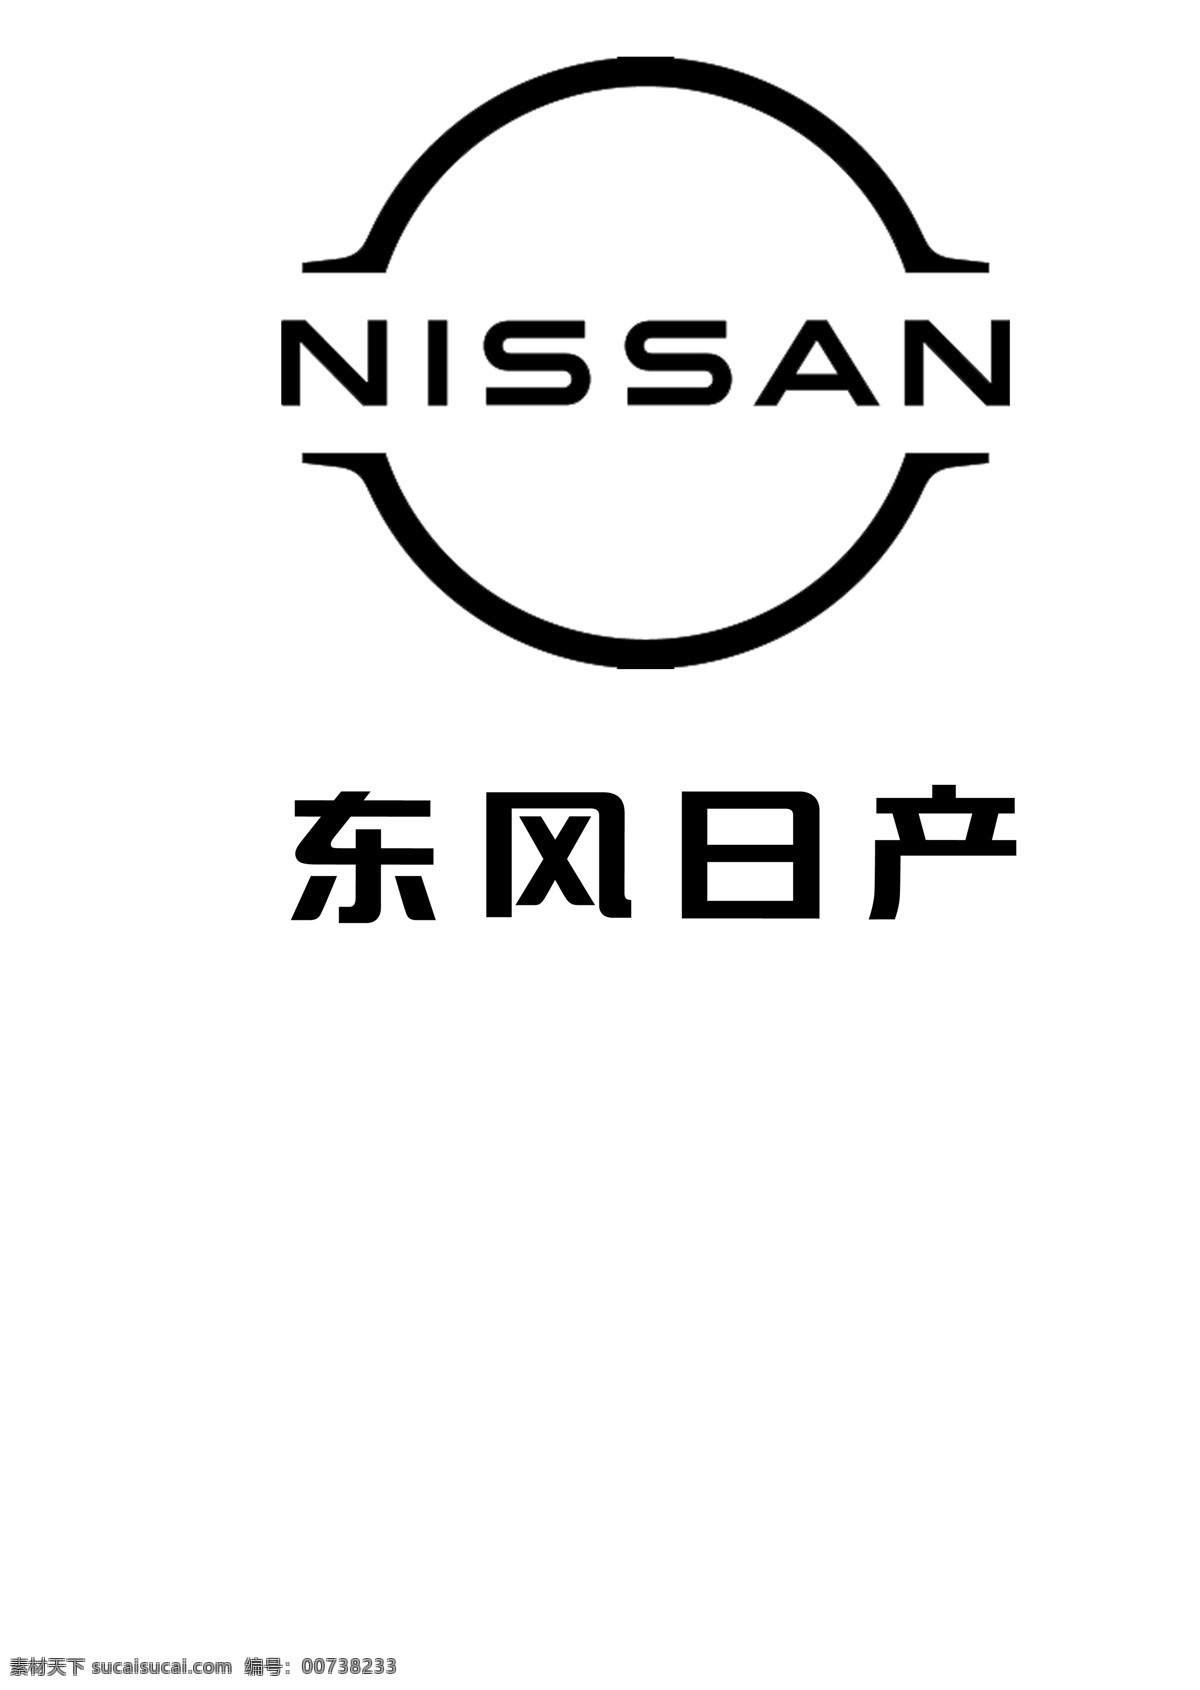 新尼桑 东风 日产 汽车 标 新标 尼桑 东风日产 汽车标 nissan 图标 标志图标 企业 logo 标志